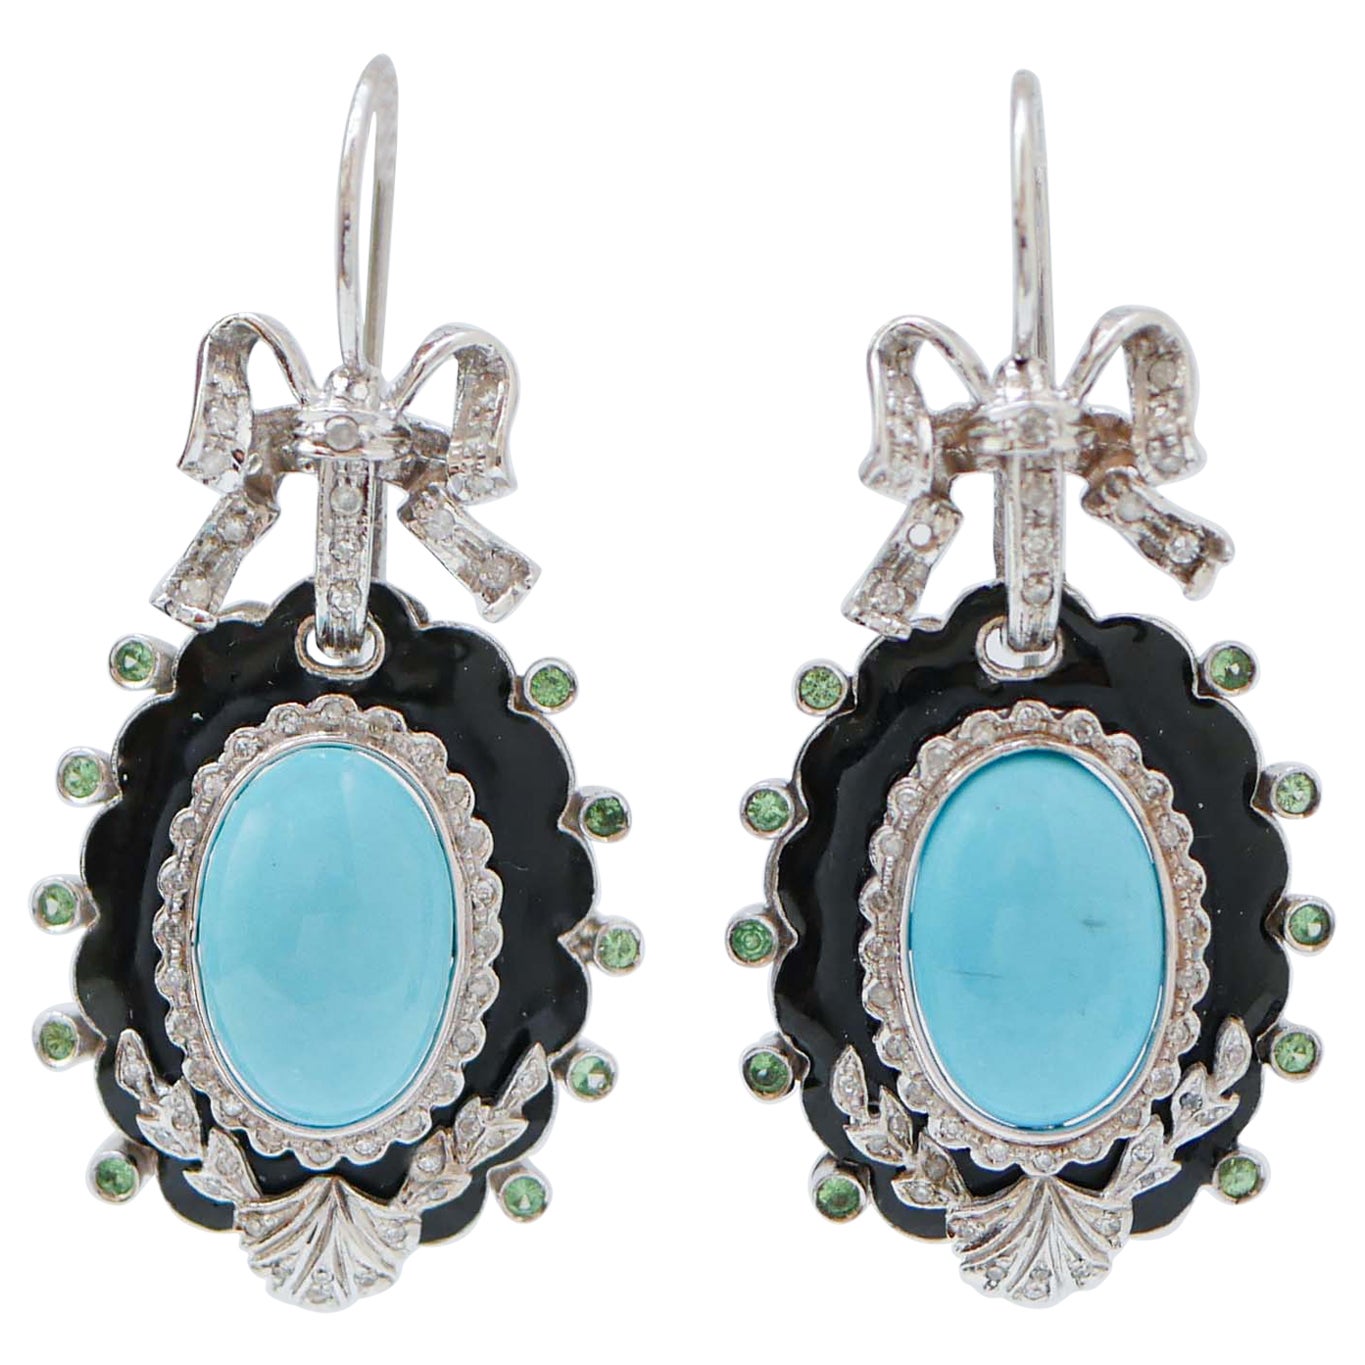 Turquoise, Tsavorites, Diamonds, Enamel, 14 Karat White Gold Dangle Earrings. For Sale